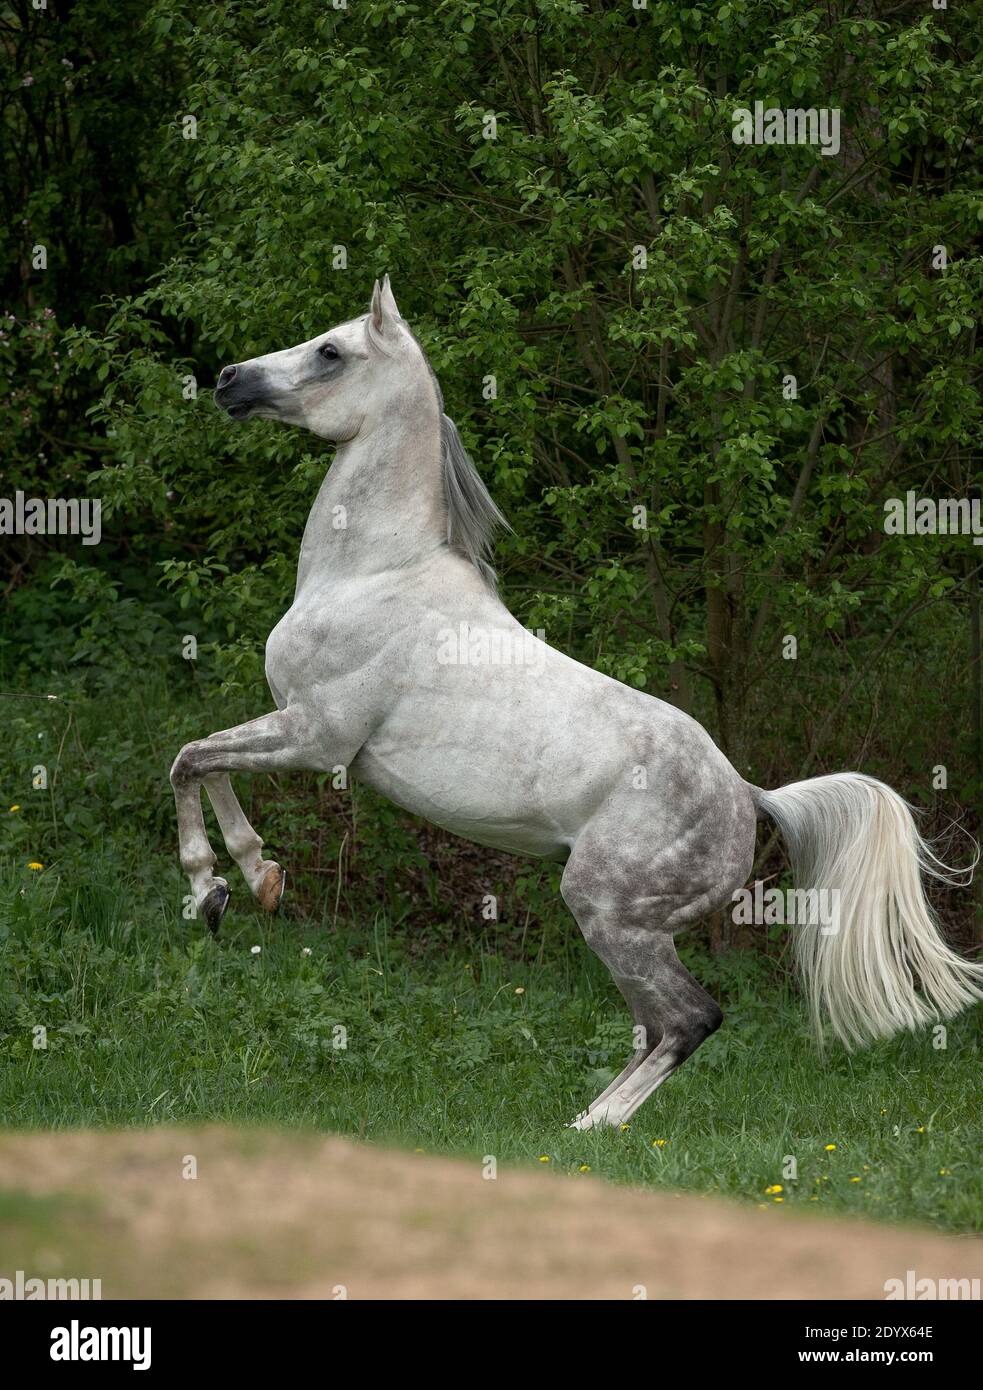 dapple gray arabian stallion rearing on nature Stock Photo